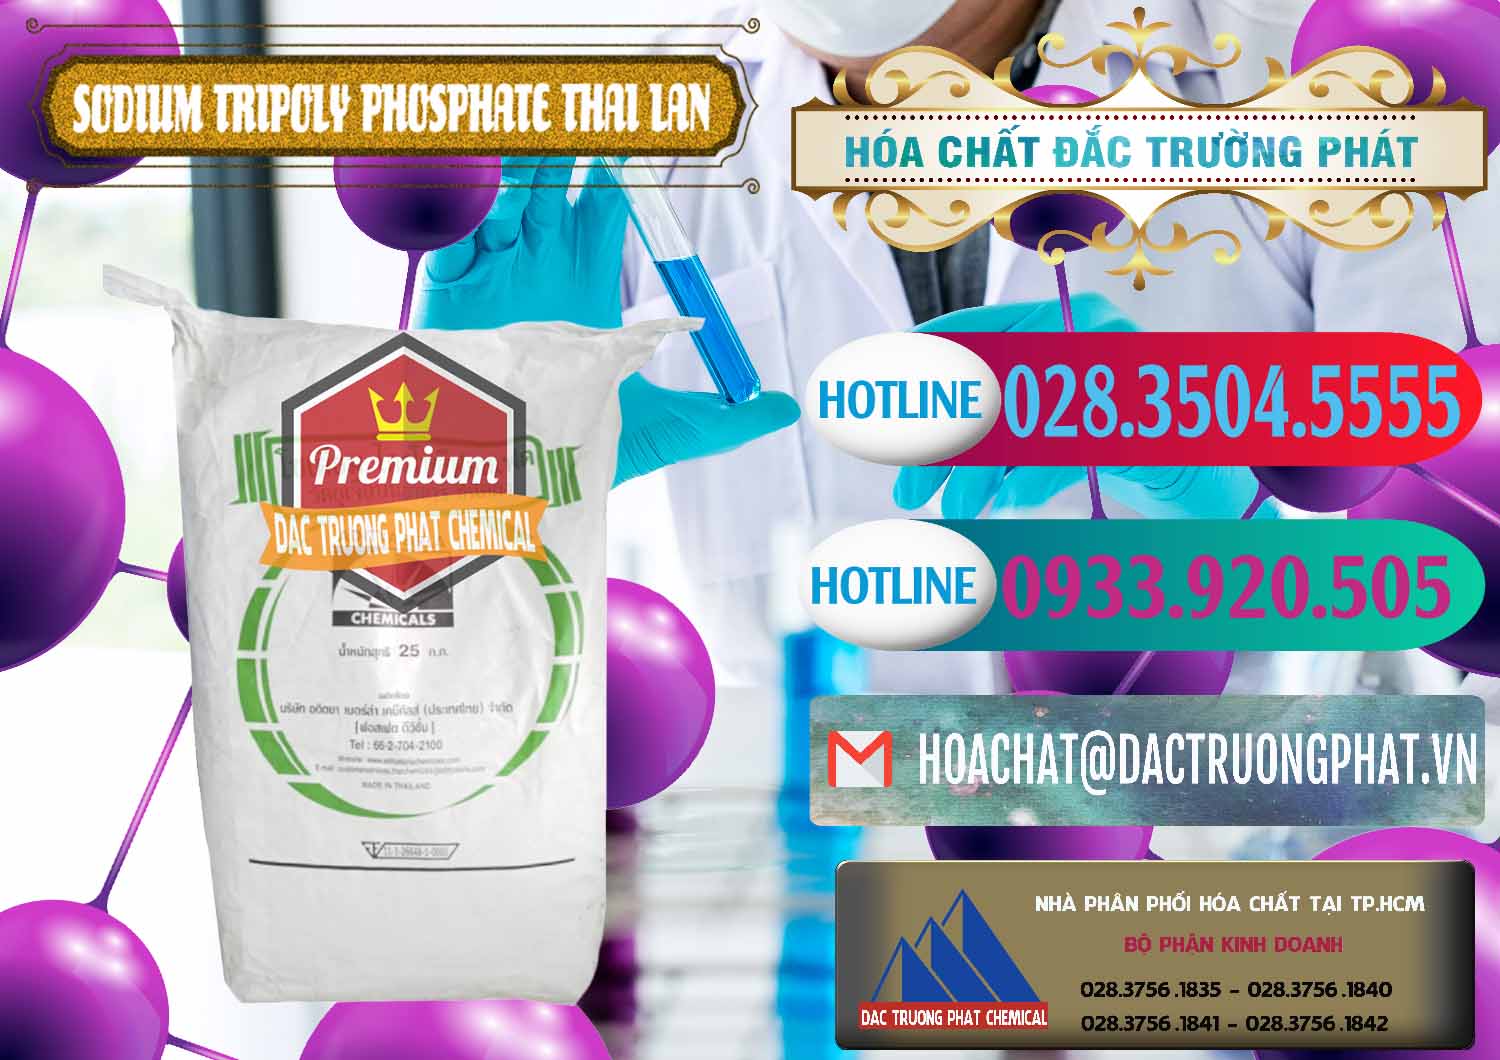 Cty bán _ cung cấp Sodium Tripoly Phosphate - STPP Aditya Birla Grasim Thái Lan Thailand - 0421 - Công ty cung cấp và bán hóa chất tại TP.HCM - truongphat.vn